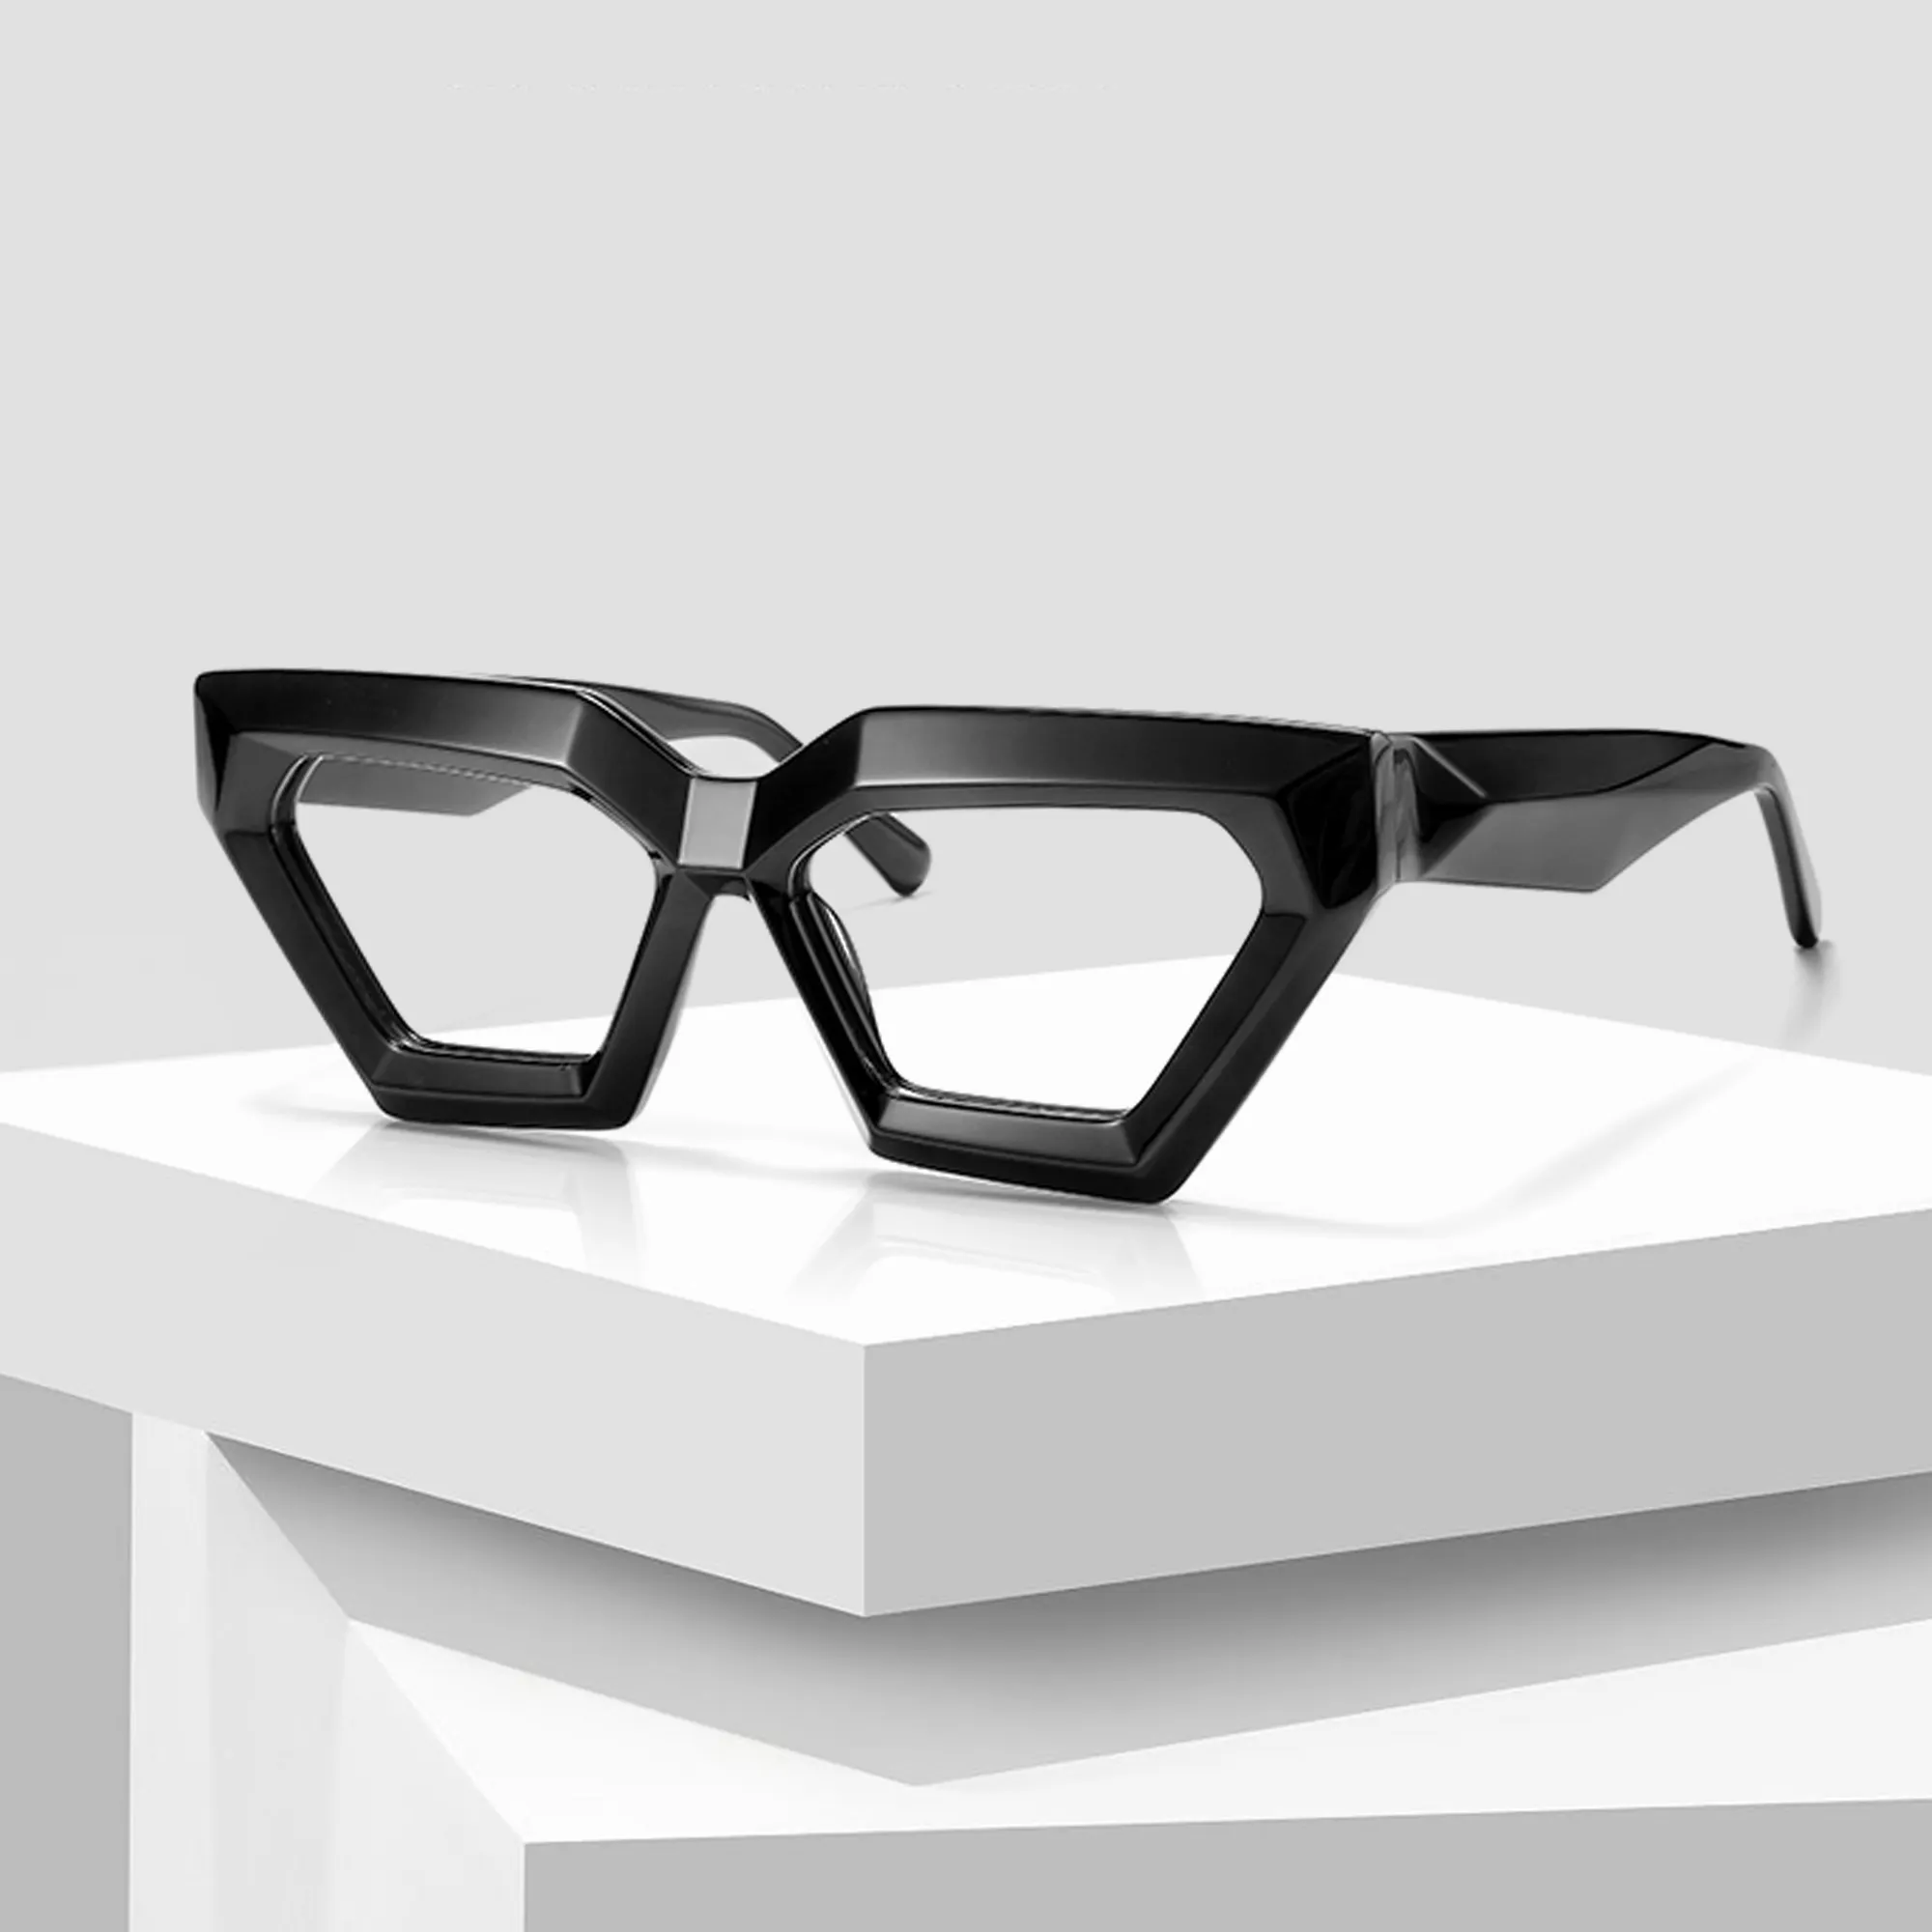 نظارة شمسية للرجال بتصميم كلاسيكي إيطالي عصري مربعة الشكل بجودة عالية مستقطبة من مادة الأسيتات نظارة شمسية مصممة للجنسين